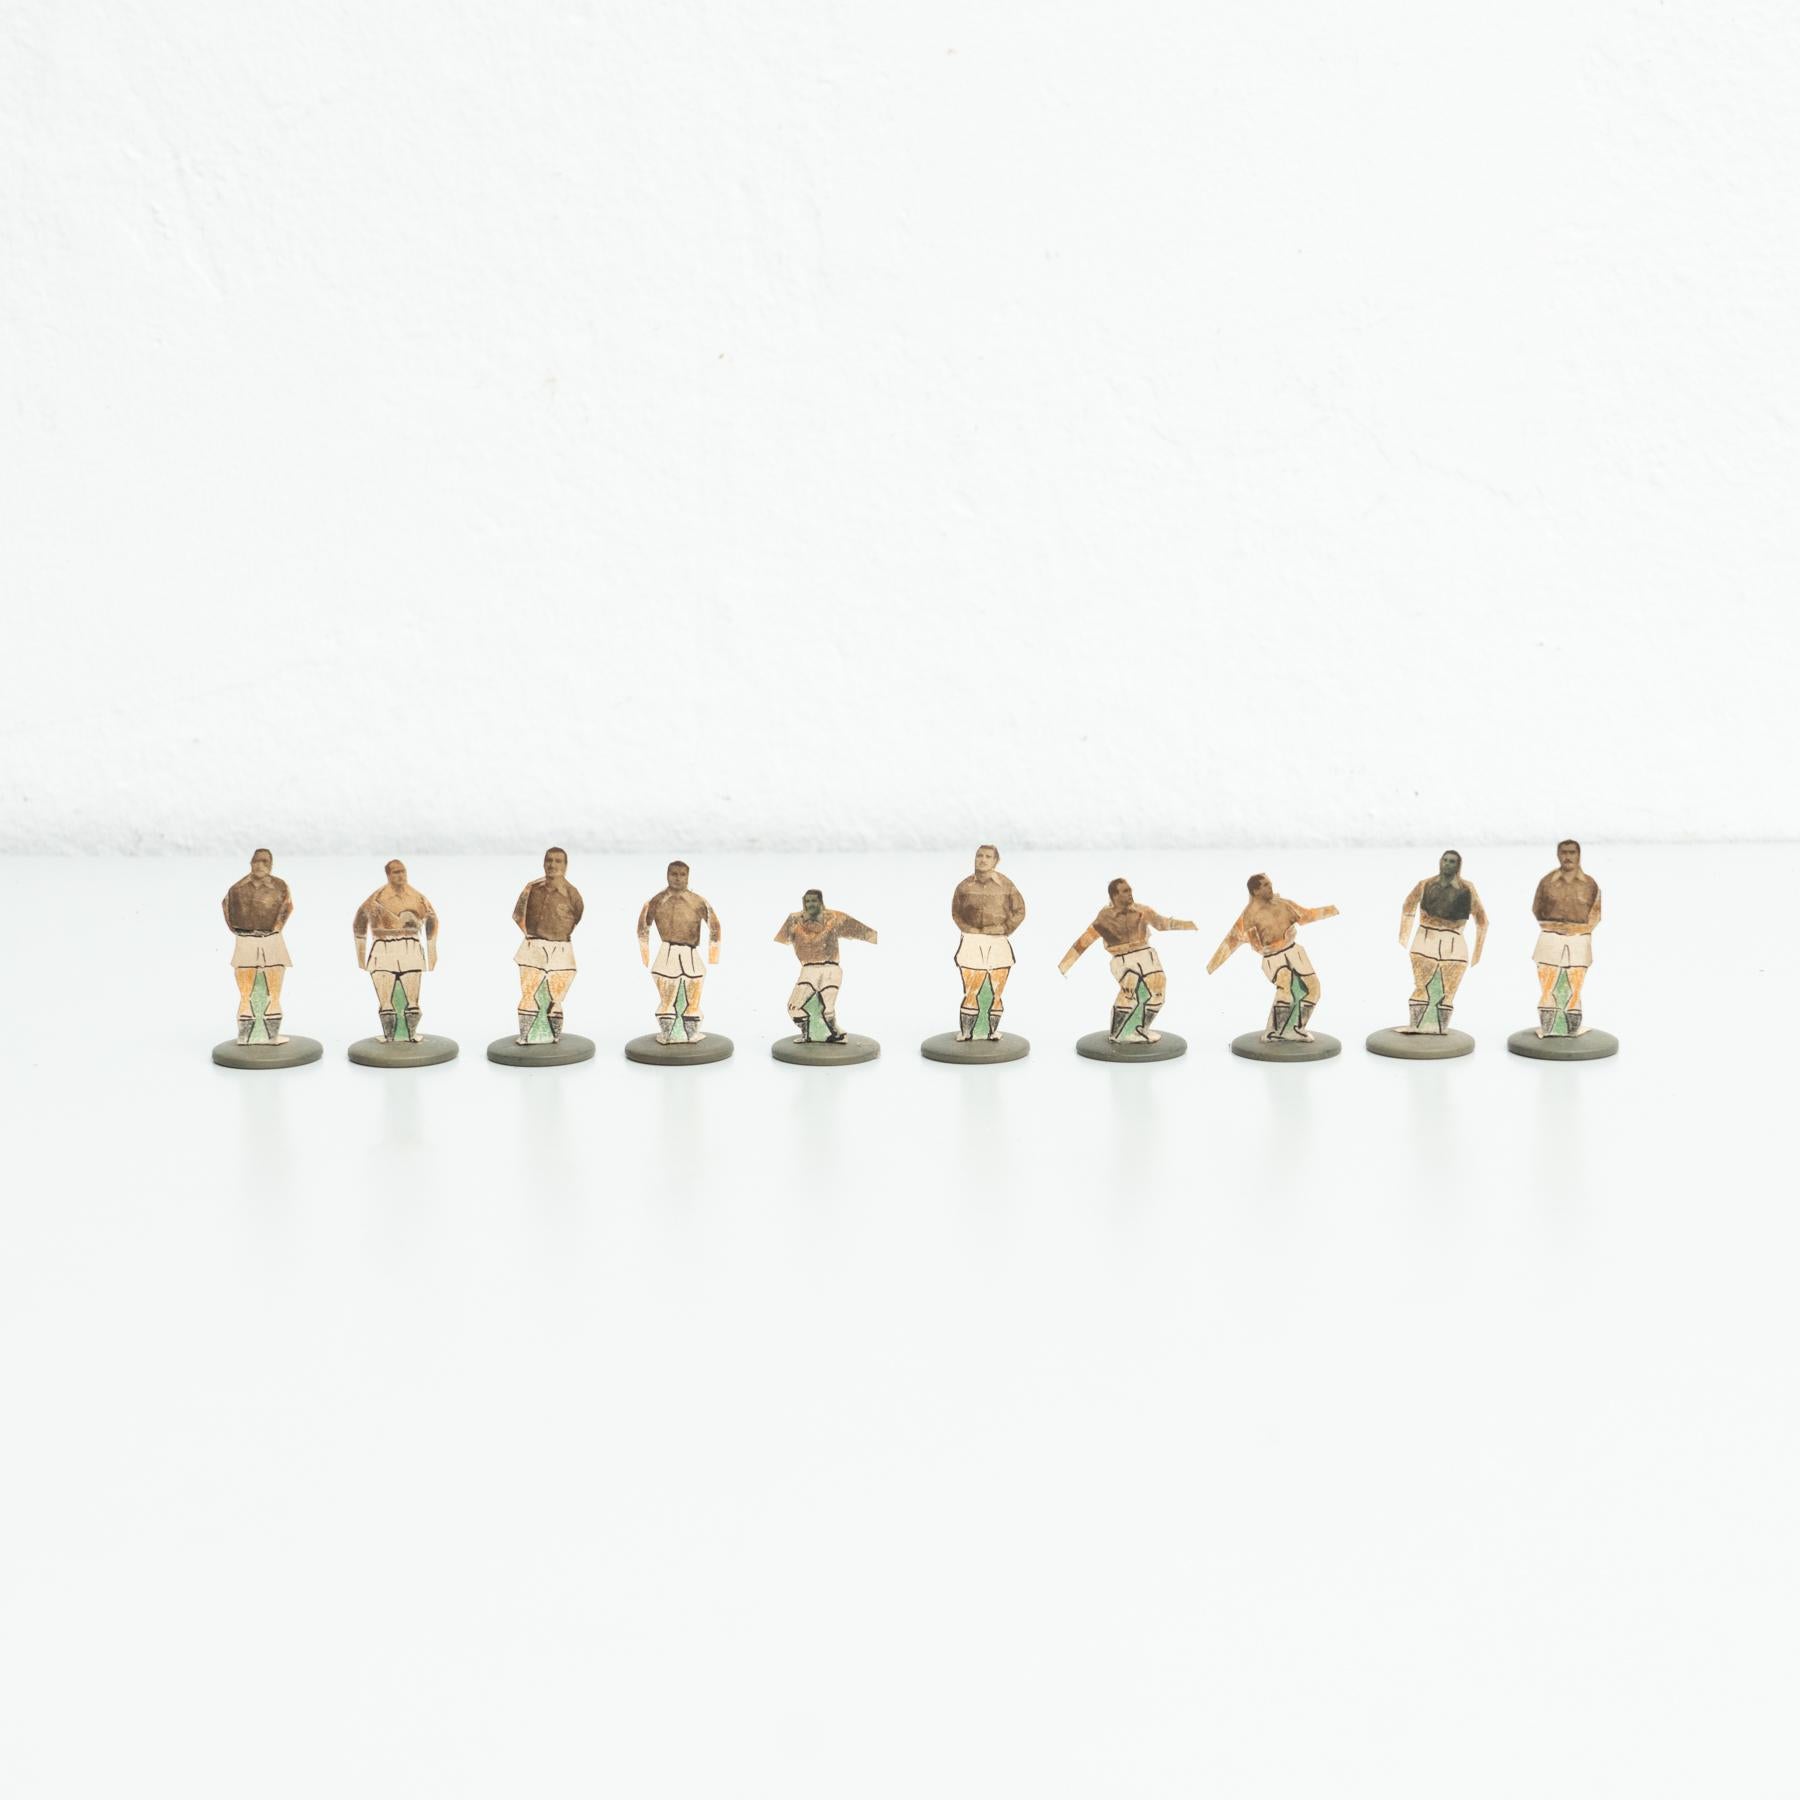 Jeu de dix joueurs de football à boutons de table. Les figures traditionnelles utilisées pour jouer à ce jeu espagnol classique à boutons. 

Fabriqué en Espagne, vers 1950.

En état d'origine, avec une usure mineure conforme à l'âge et à